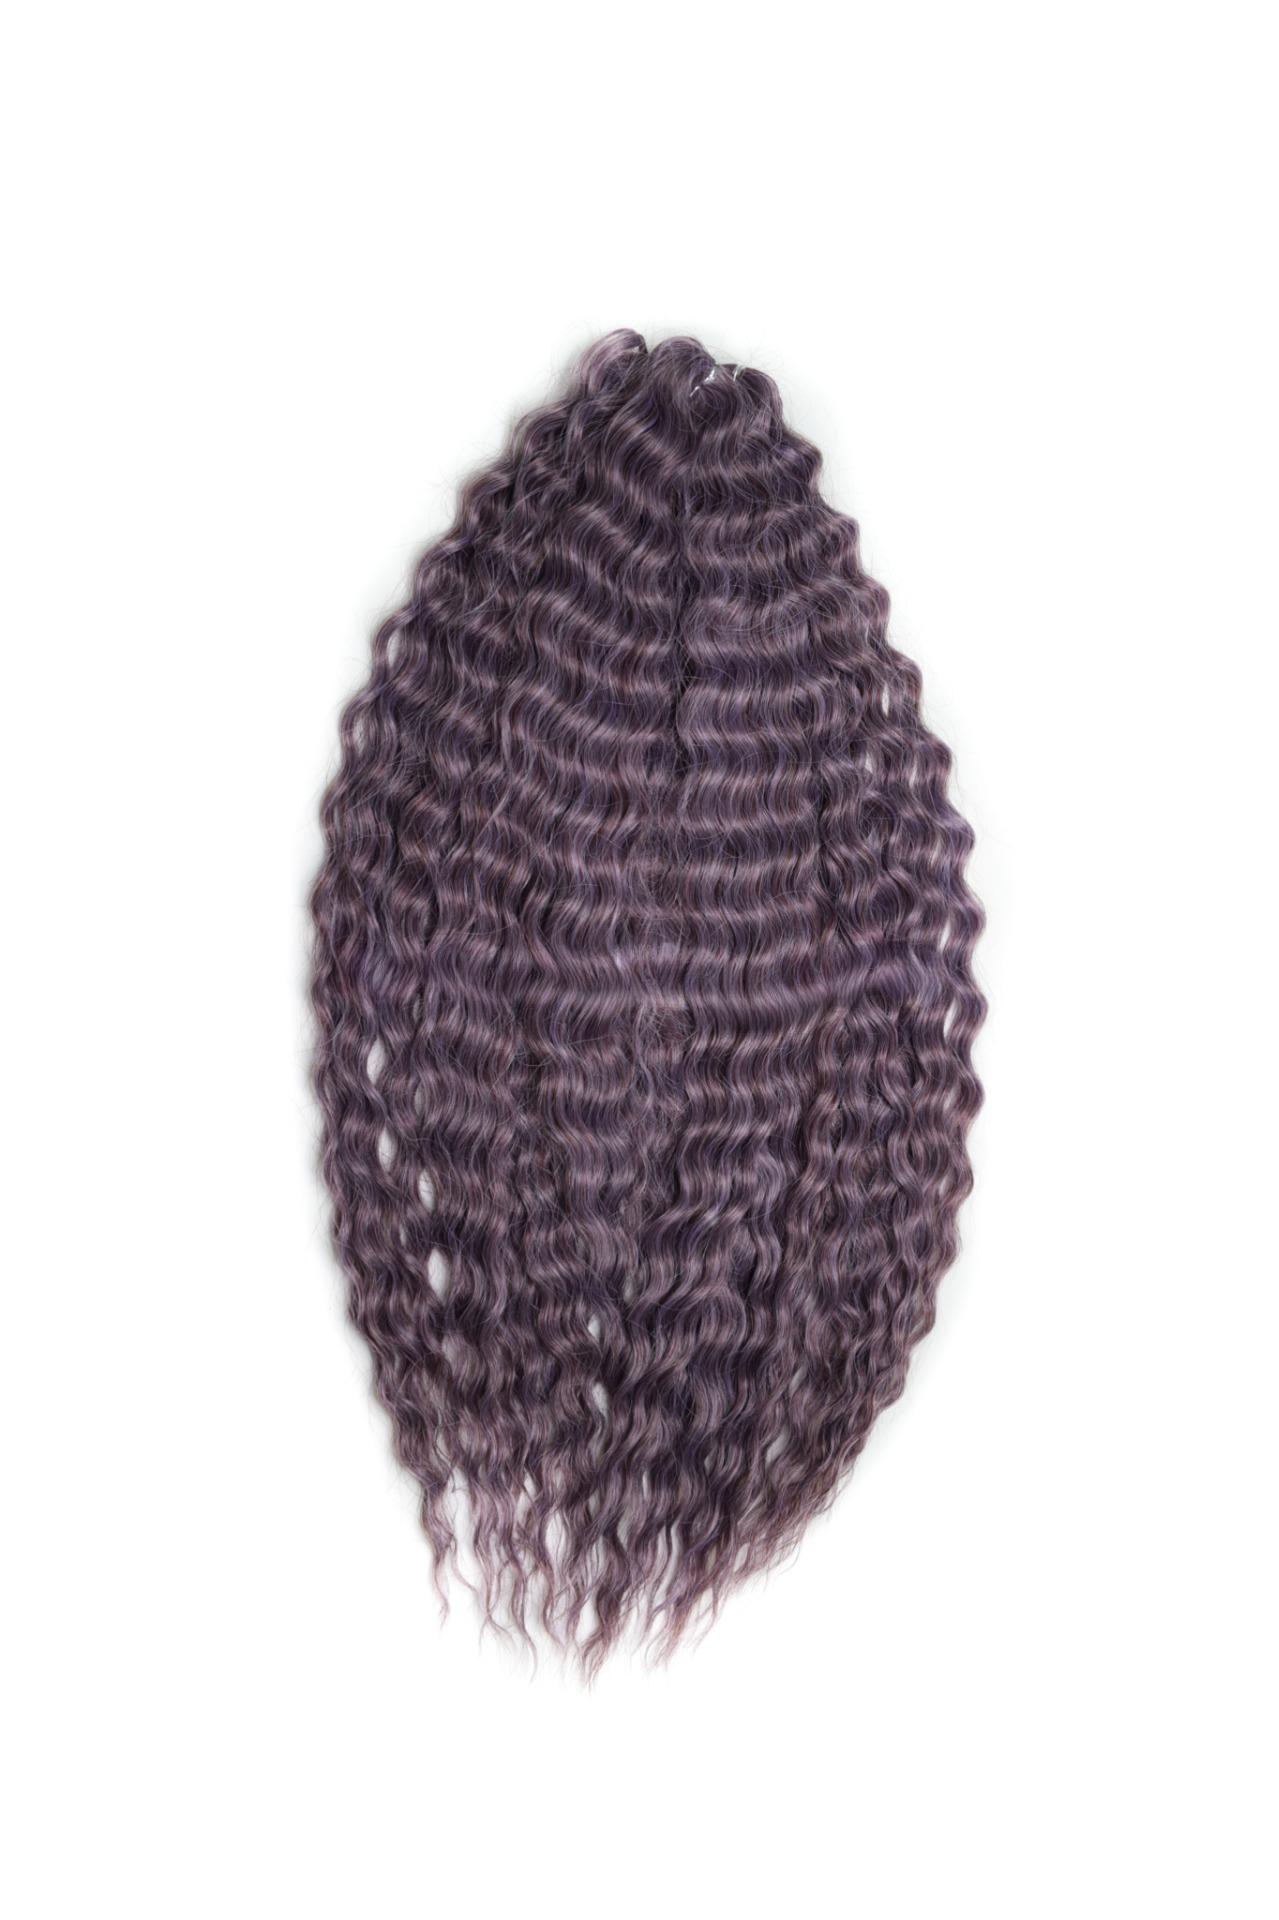 Афрокудри для плетения волос Ariel Ариэль цвет PURPLE GREY длина 60см вес 300г афрокудри для плетения волос ariel t16 60a cерый длина 55см вес 300г